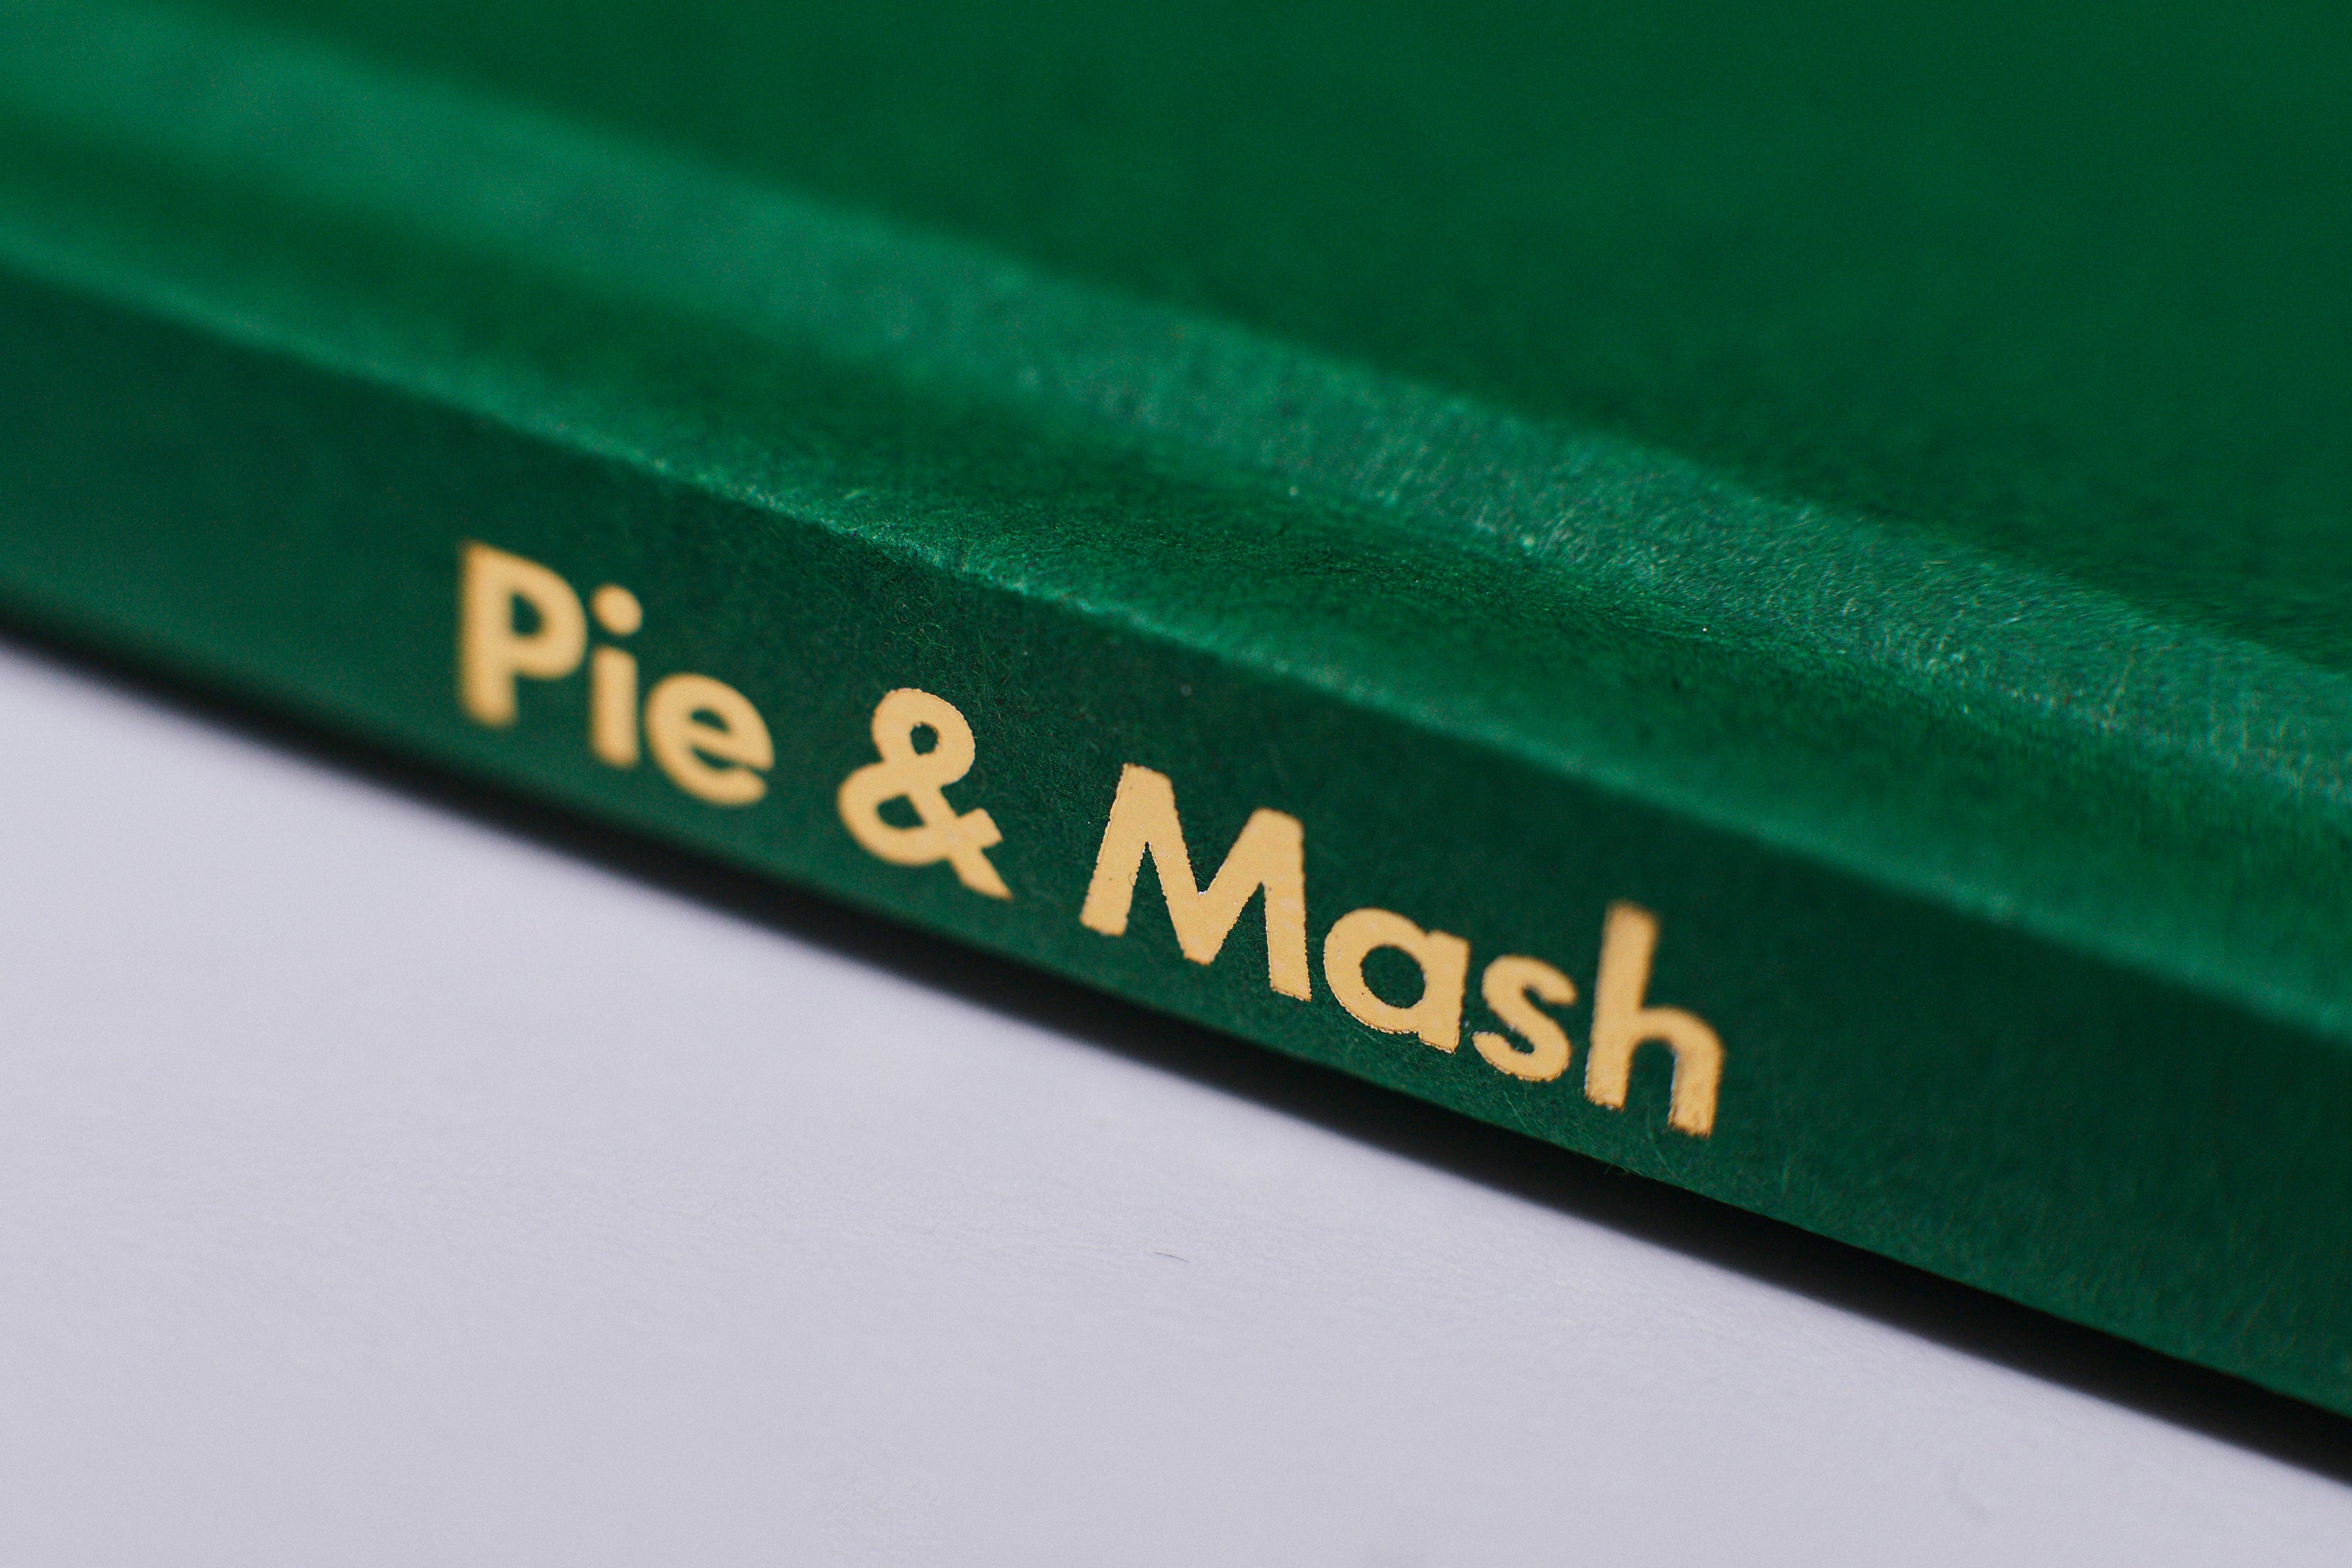 Pie & Mash Hardback